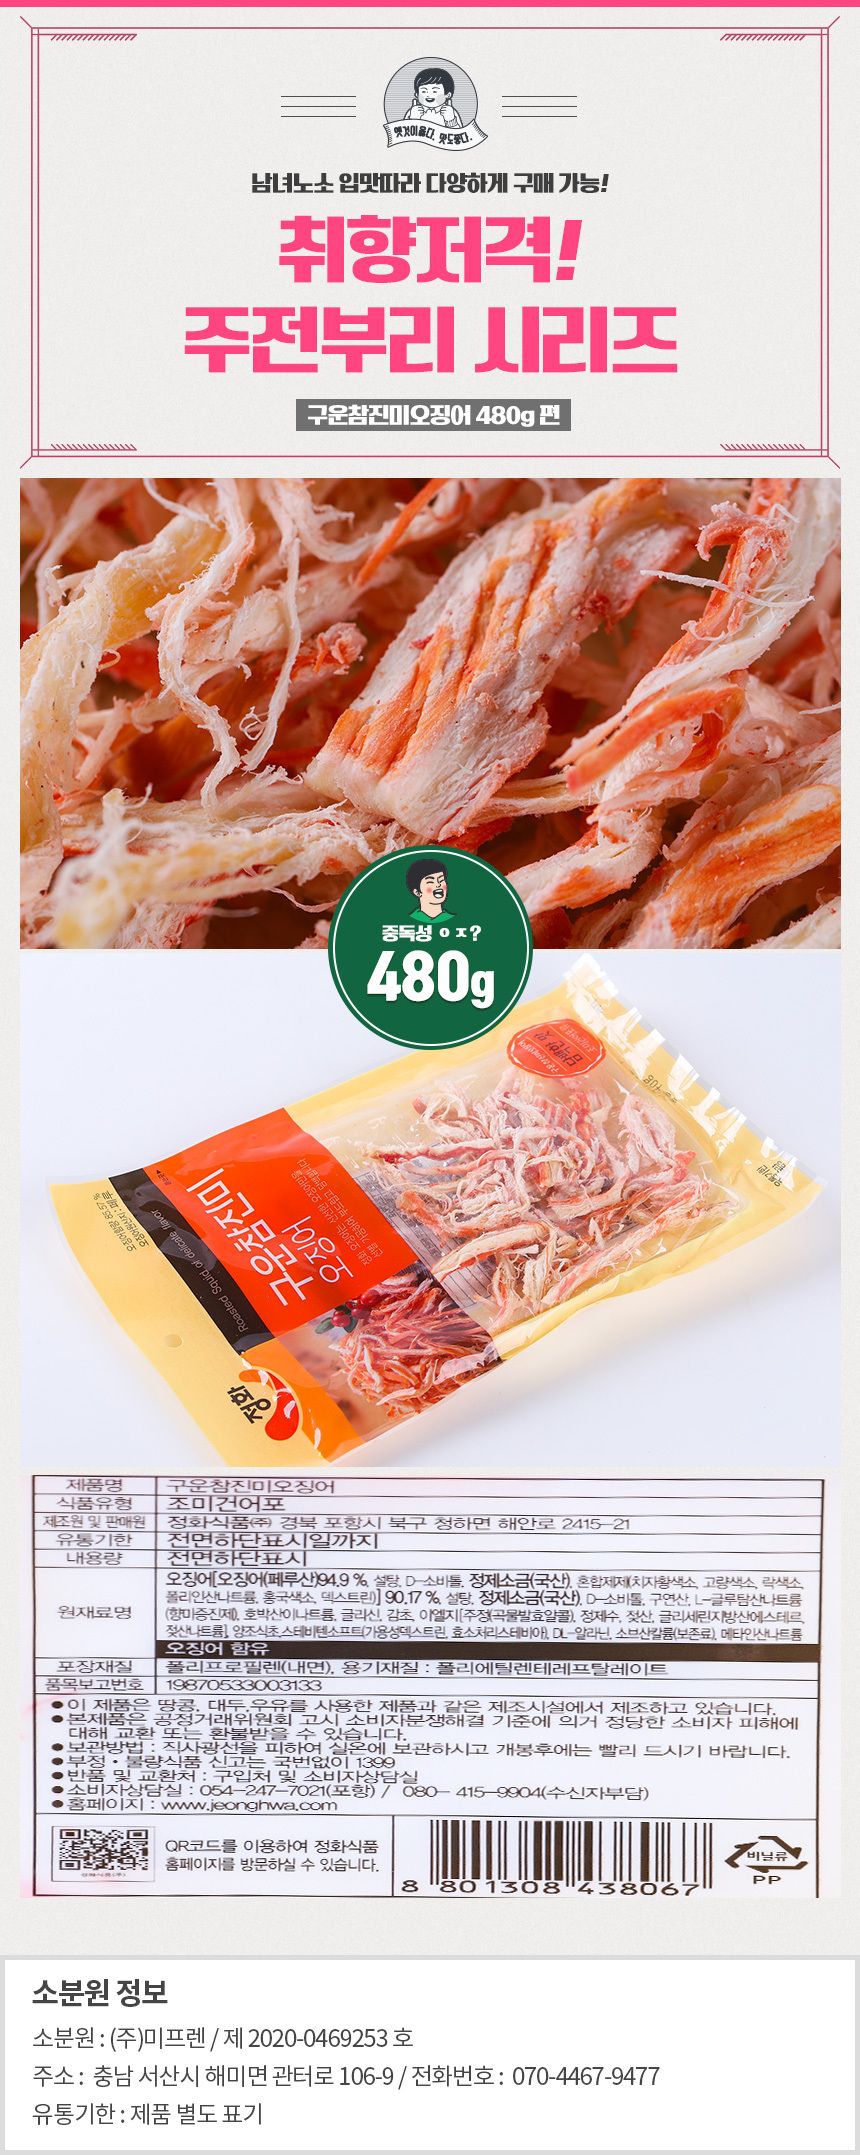 韓國食品-[정화] 구운참진미오징어 40g